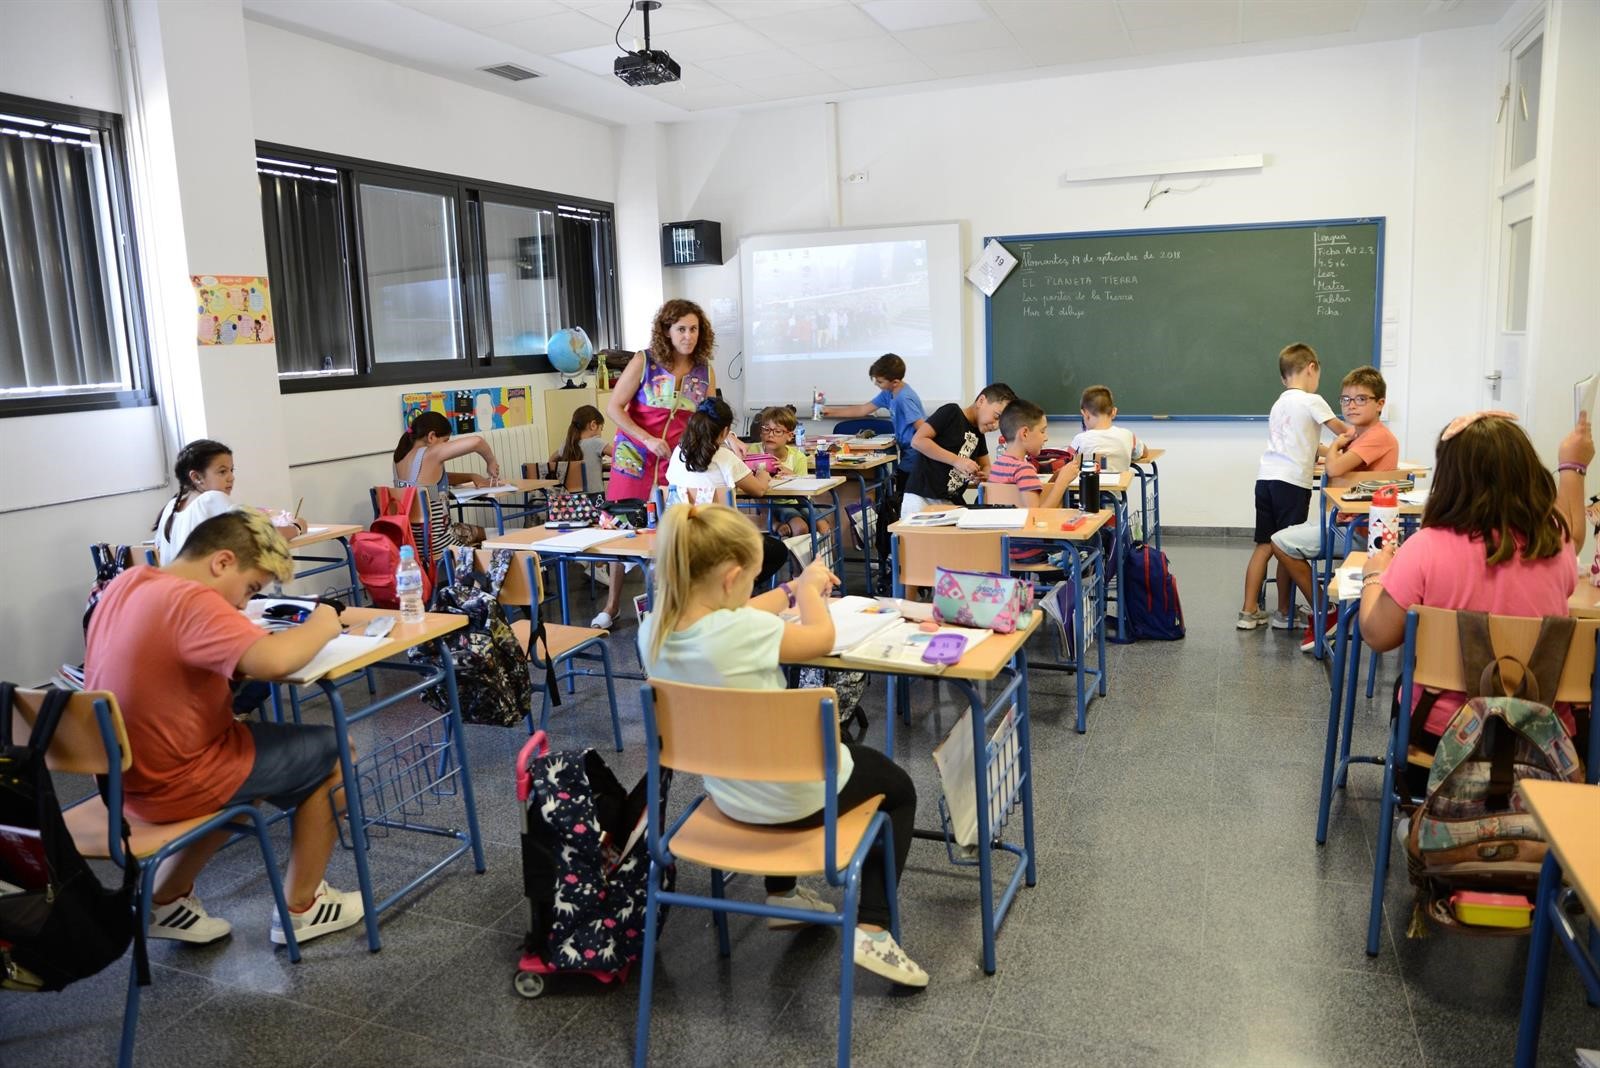 Más de 83.900 alumnos comienzan curso en Infantil, Primaria y Educación Especial en la provincia